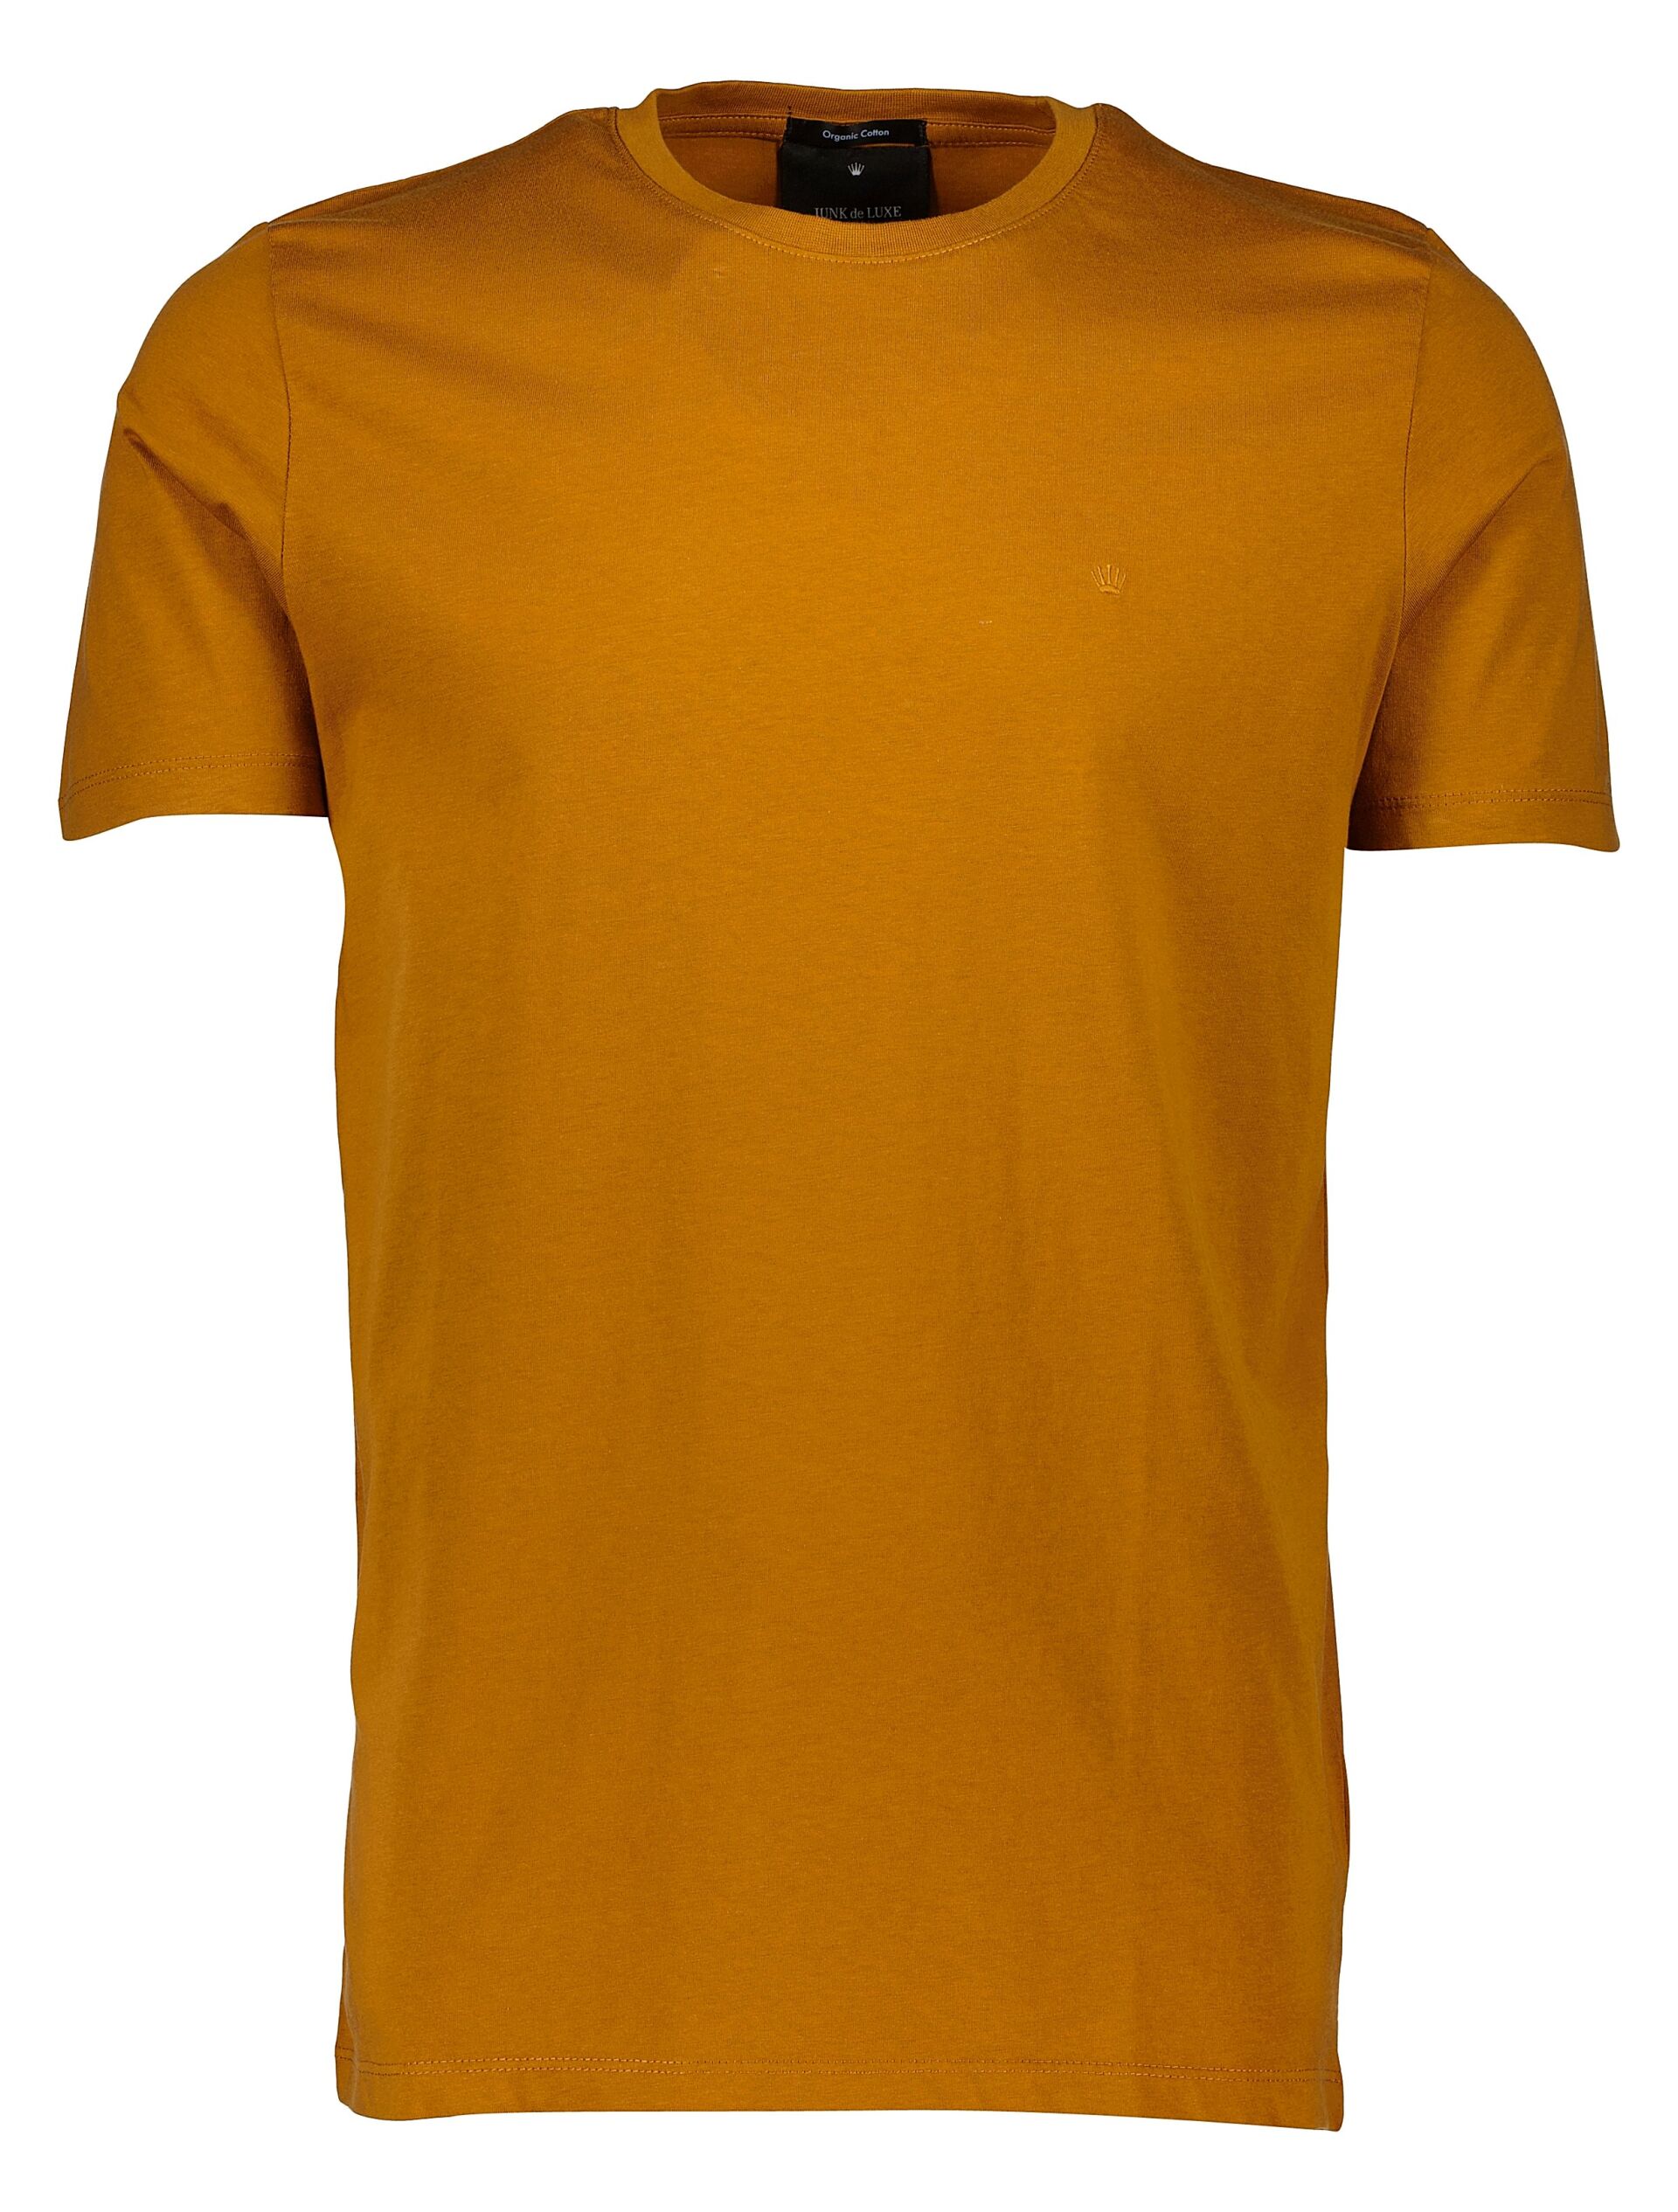 Junk de Luxe  T-shirt Brun 60-40005